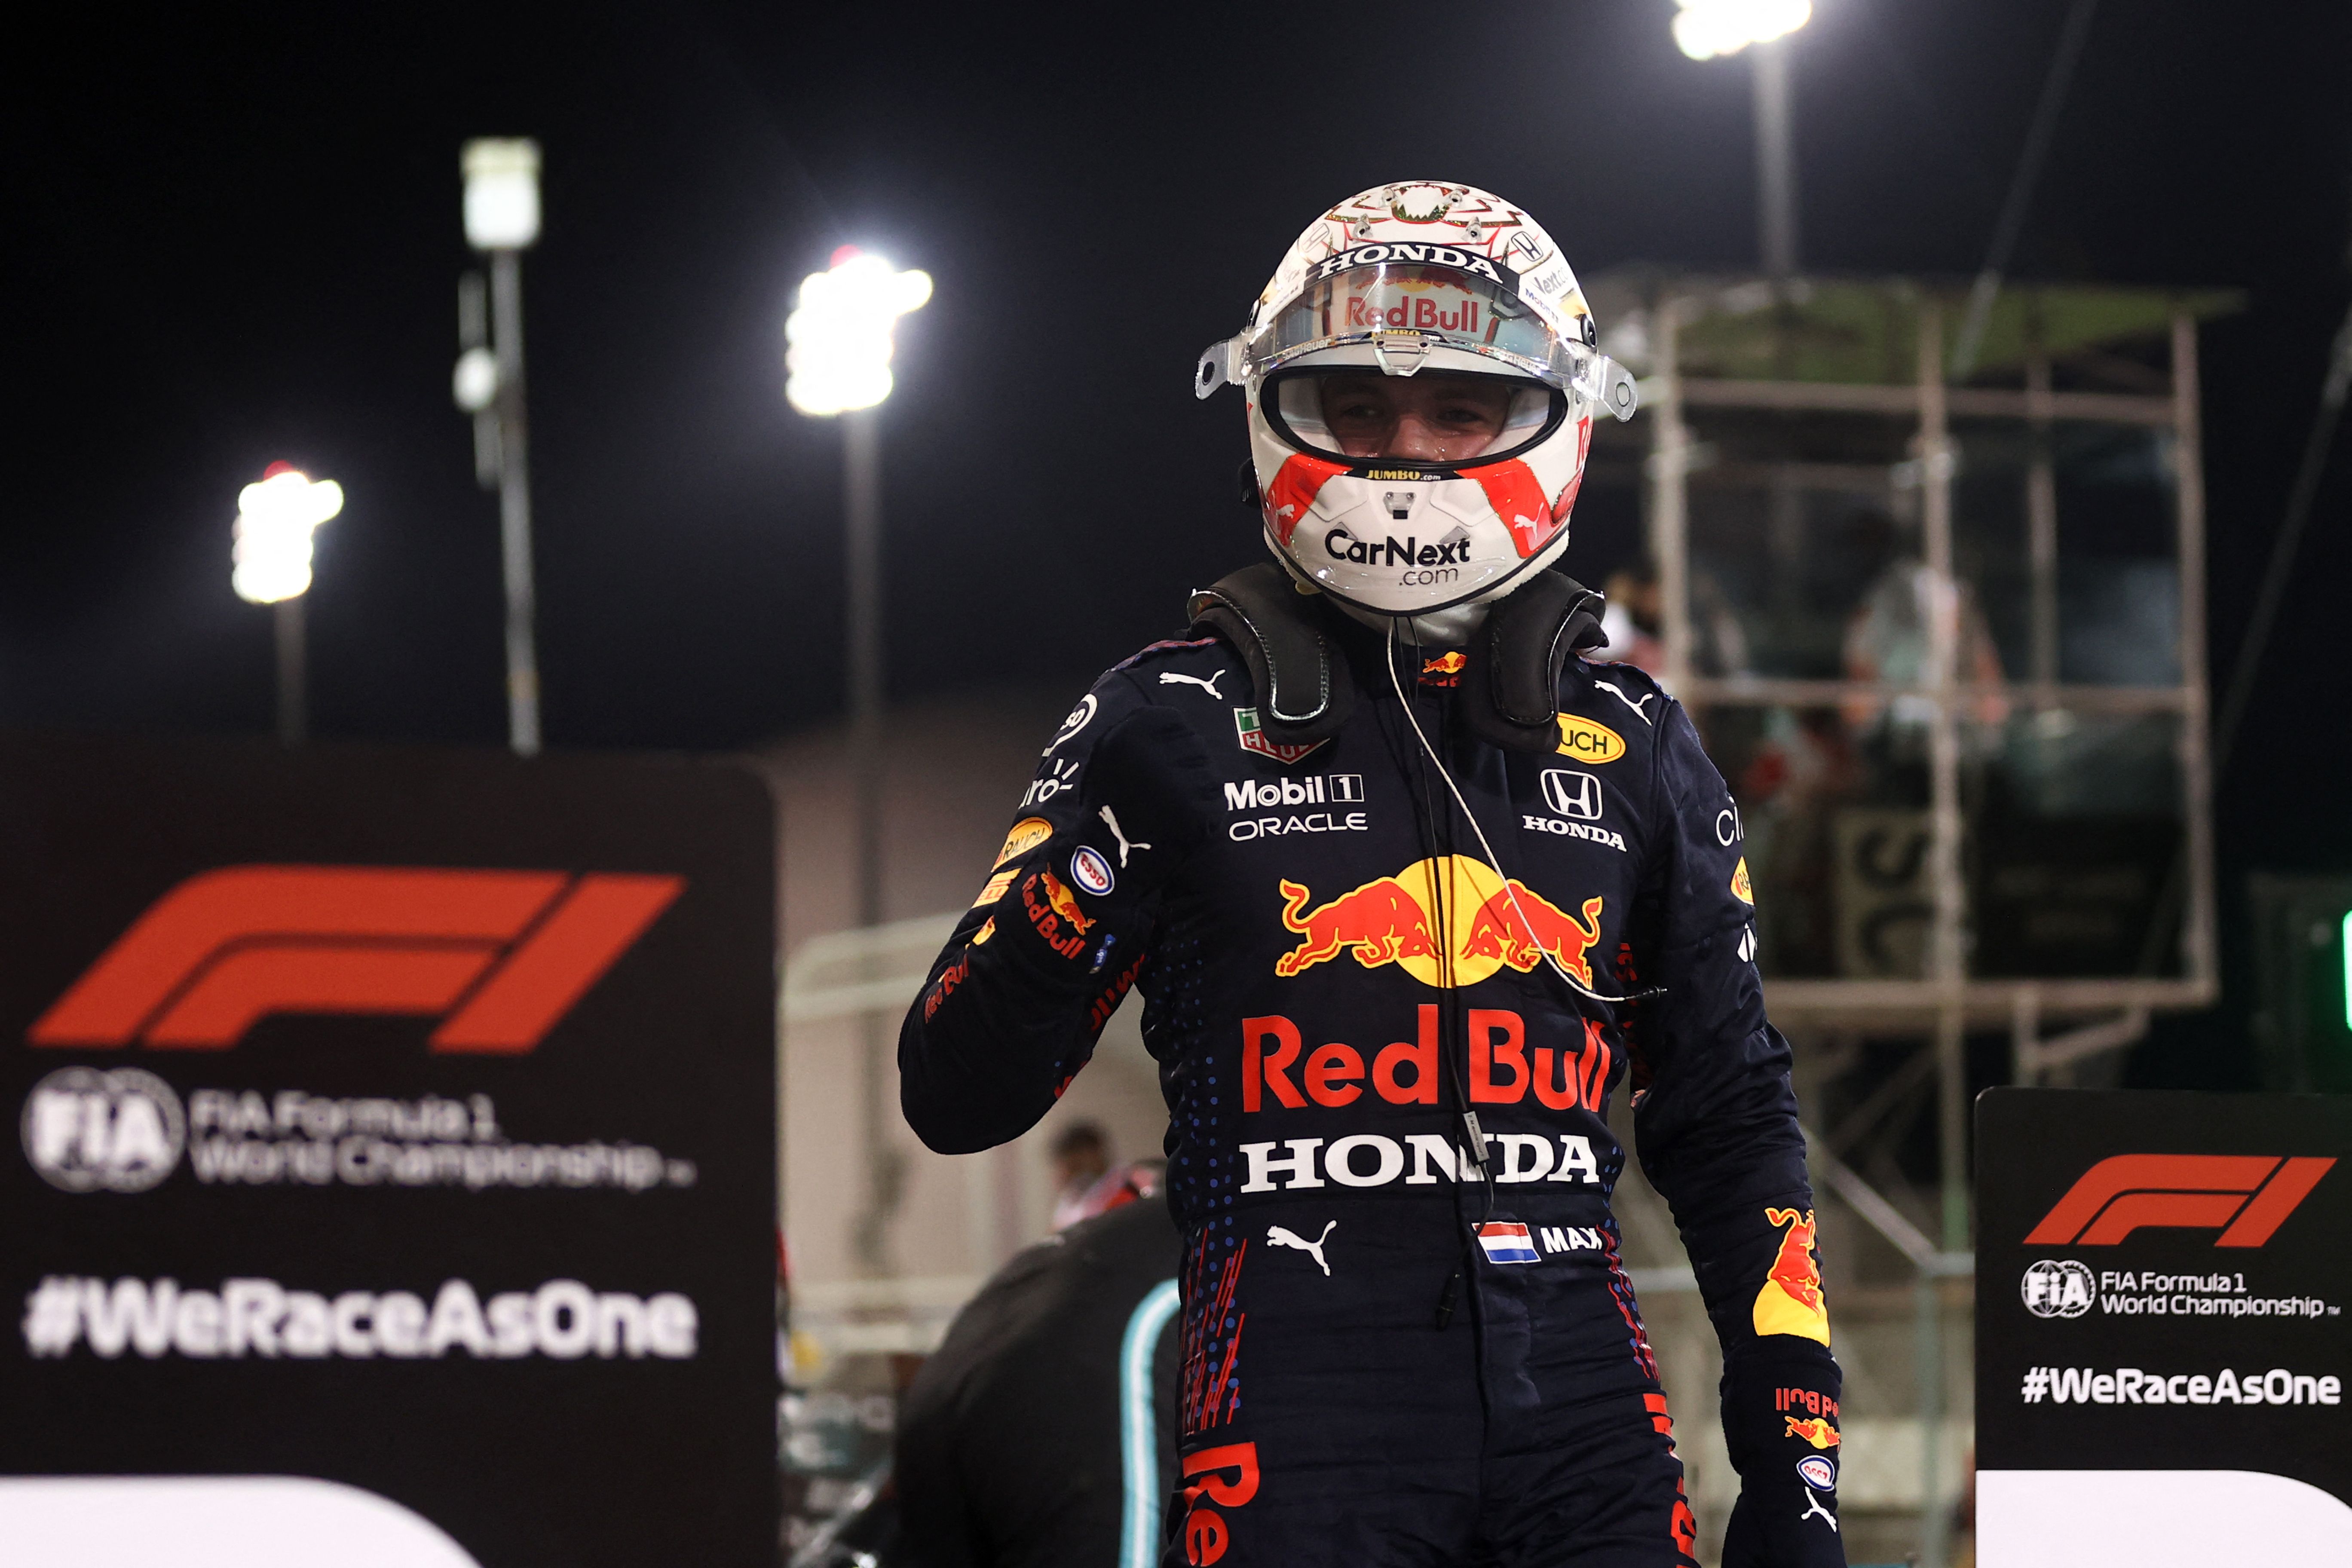 El piloto Max Verstappen celebra después de ganar la clasificación del Gran Premio de Bahrain.
(Foto Prensa Libre: AFP).